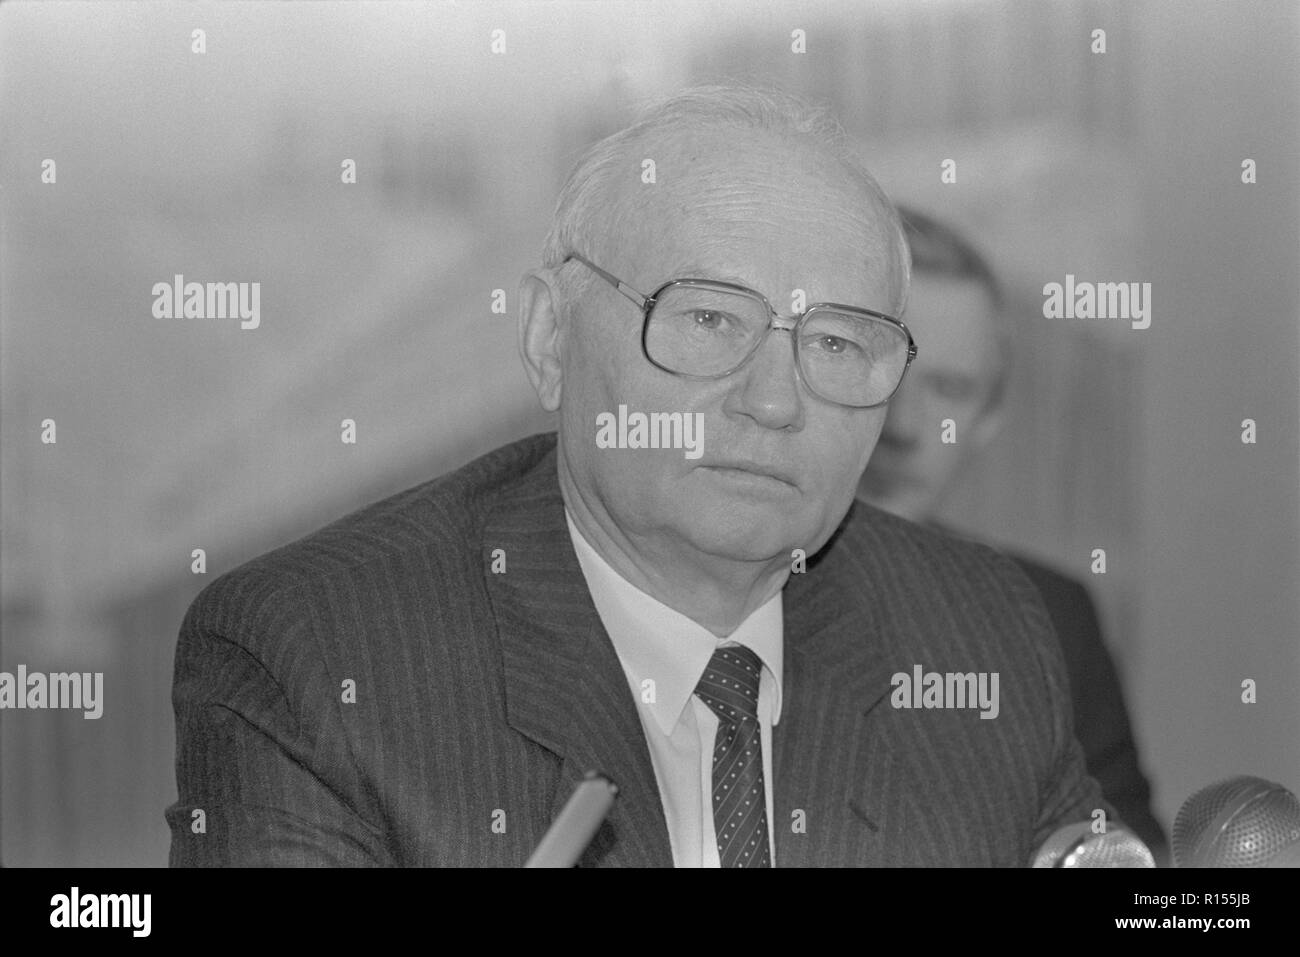 Moskau, UDSSR - Dezember 26, 1990: Vorsitzender des Ausschusses für Staatssicherheit (KGB) Wladimir Alexandrowitsch Kryuchkov Presse-Konferenz am 4. Kongress der Volksdeputierten der UDSSR Stockfoto